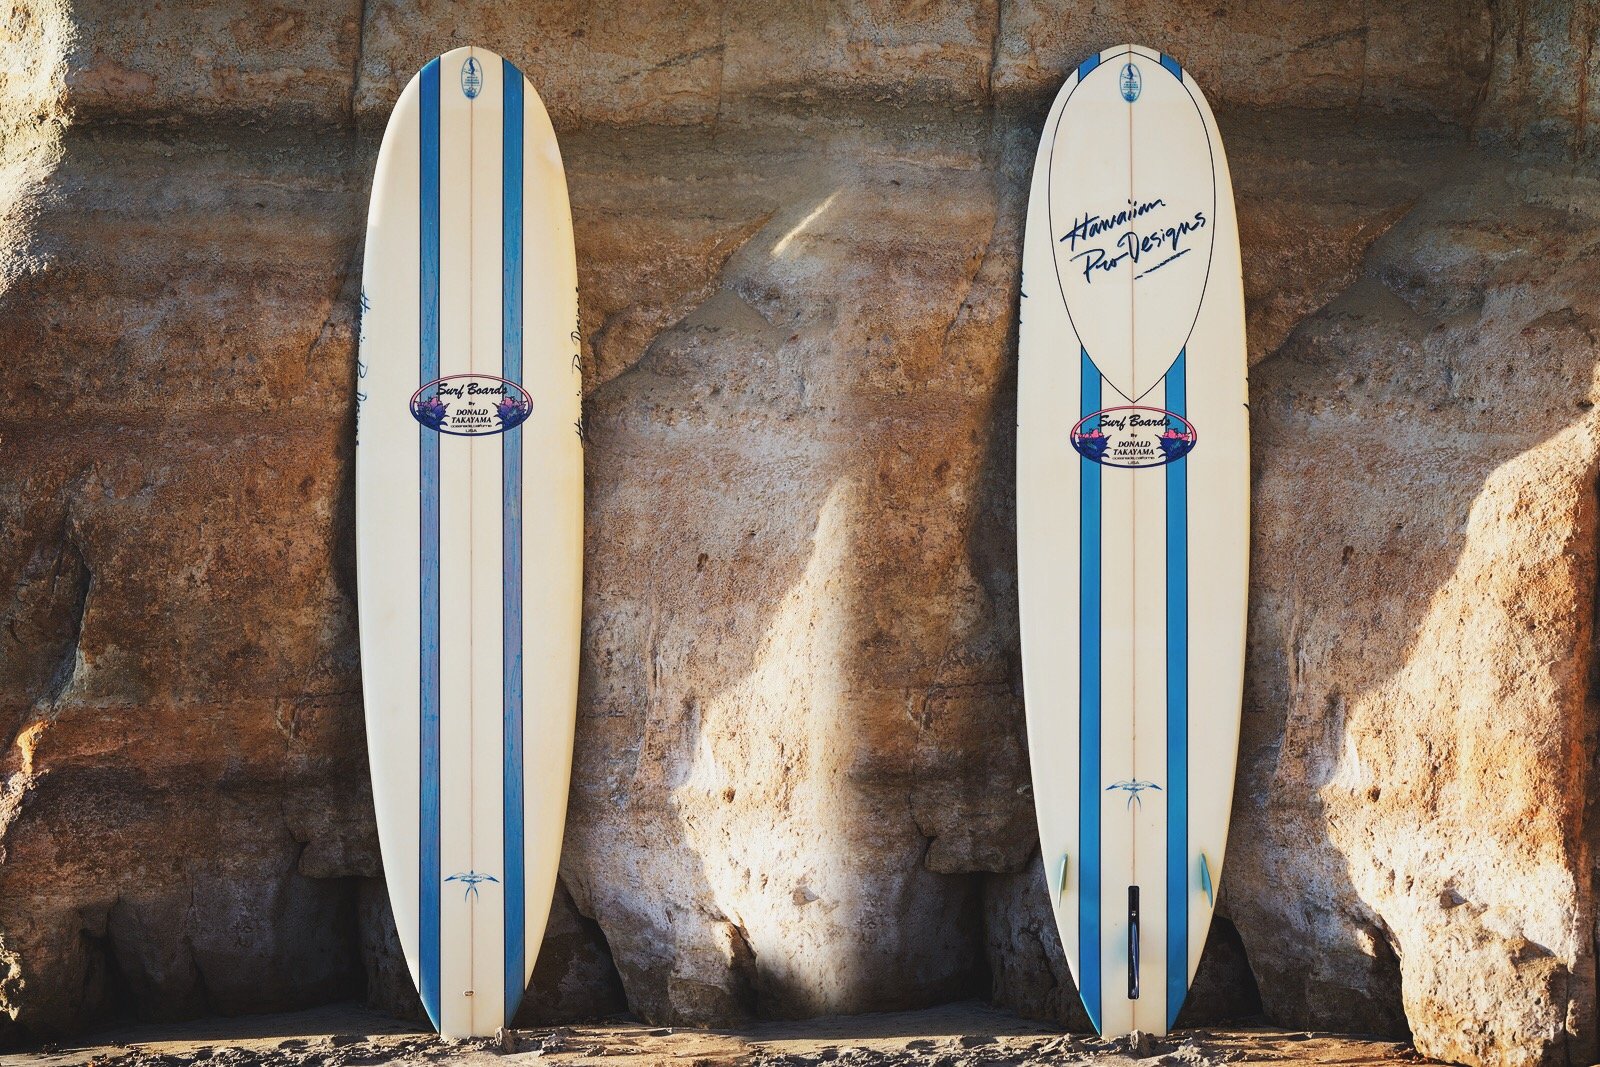  Top and bottom of Linda Benson’s Donald Takayama surfboard 